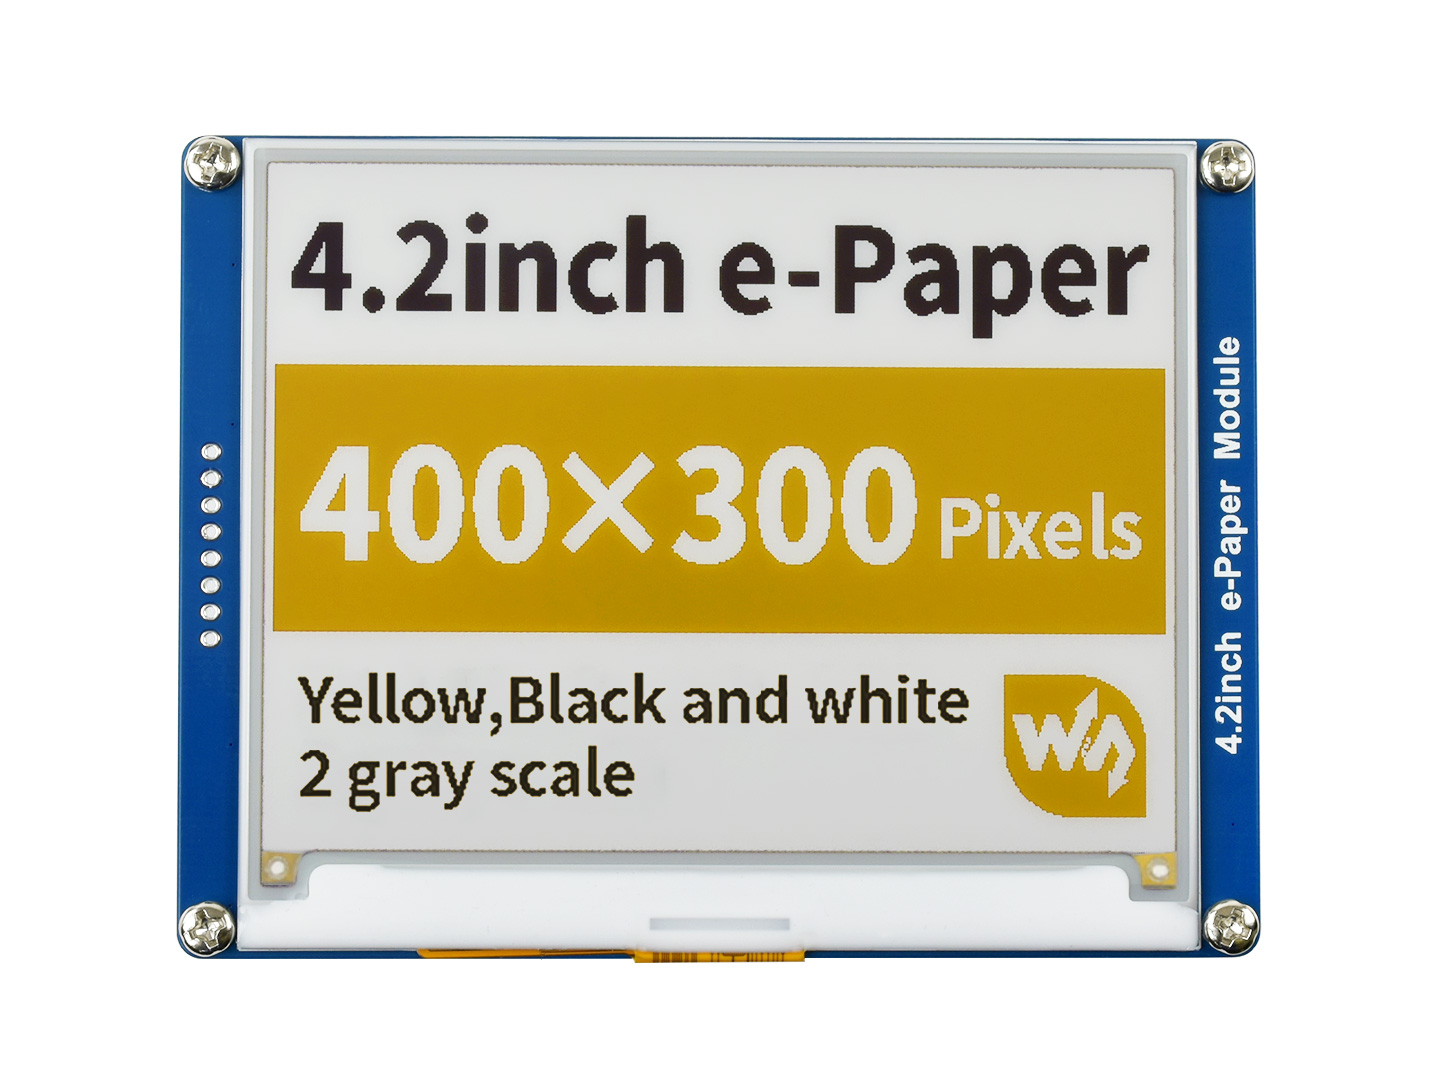 树莓派4.2寸电子墨水屏 e-paper 400x300分辨率 黄黑白